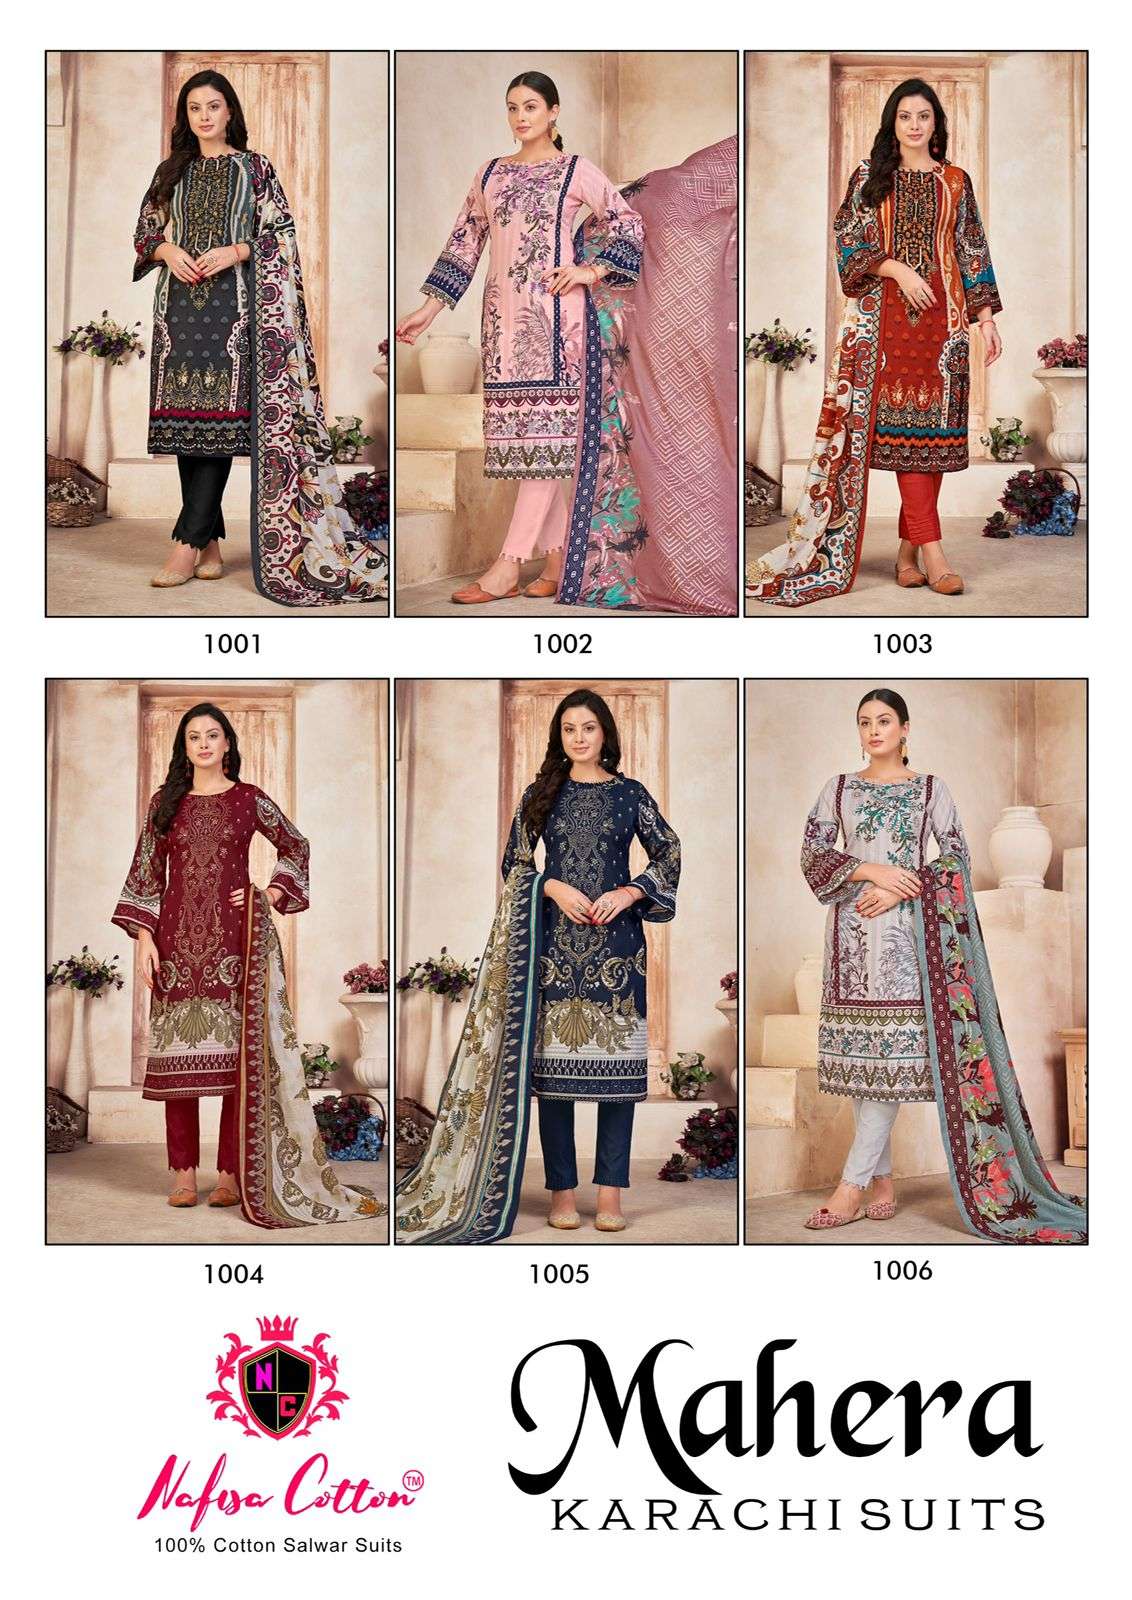 mahera karachi suits nafisha cotton 1001 1006 series latest designer pakistani salwar kameez wholesaler surat gujarat 0 2023 10 10 22 26 02